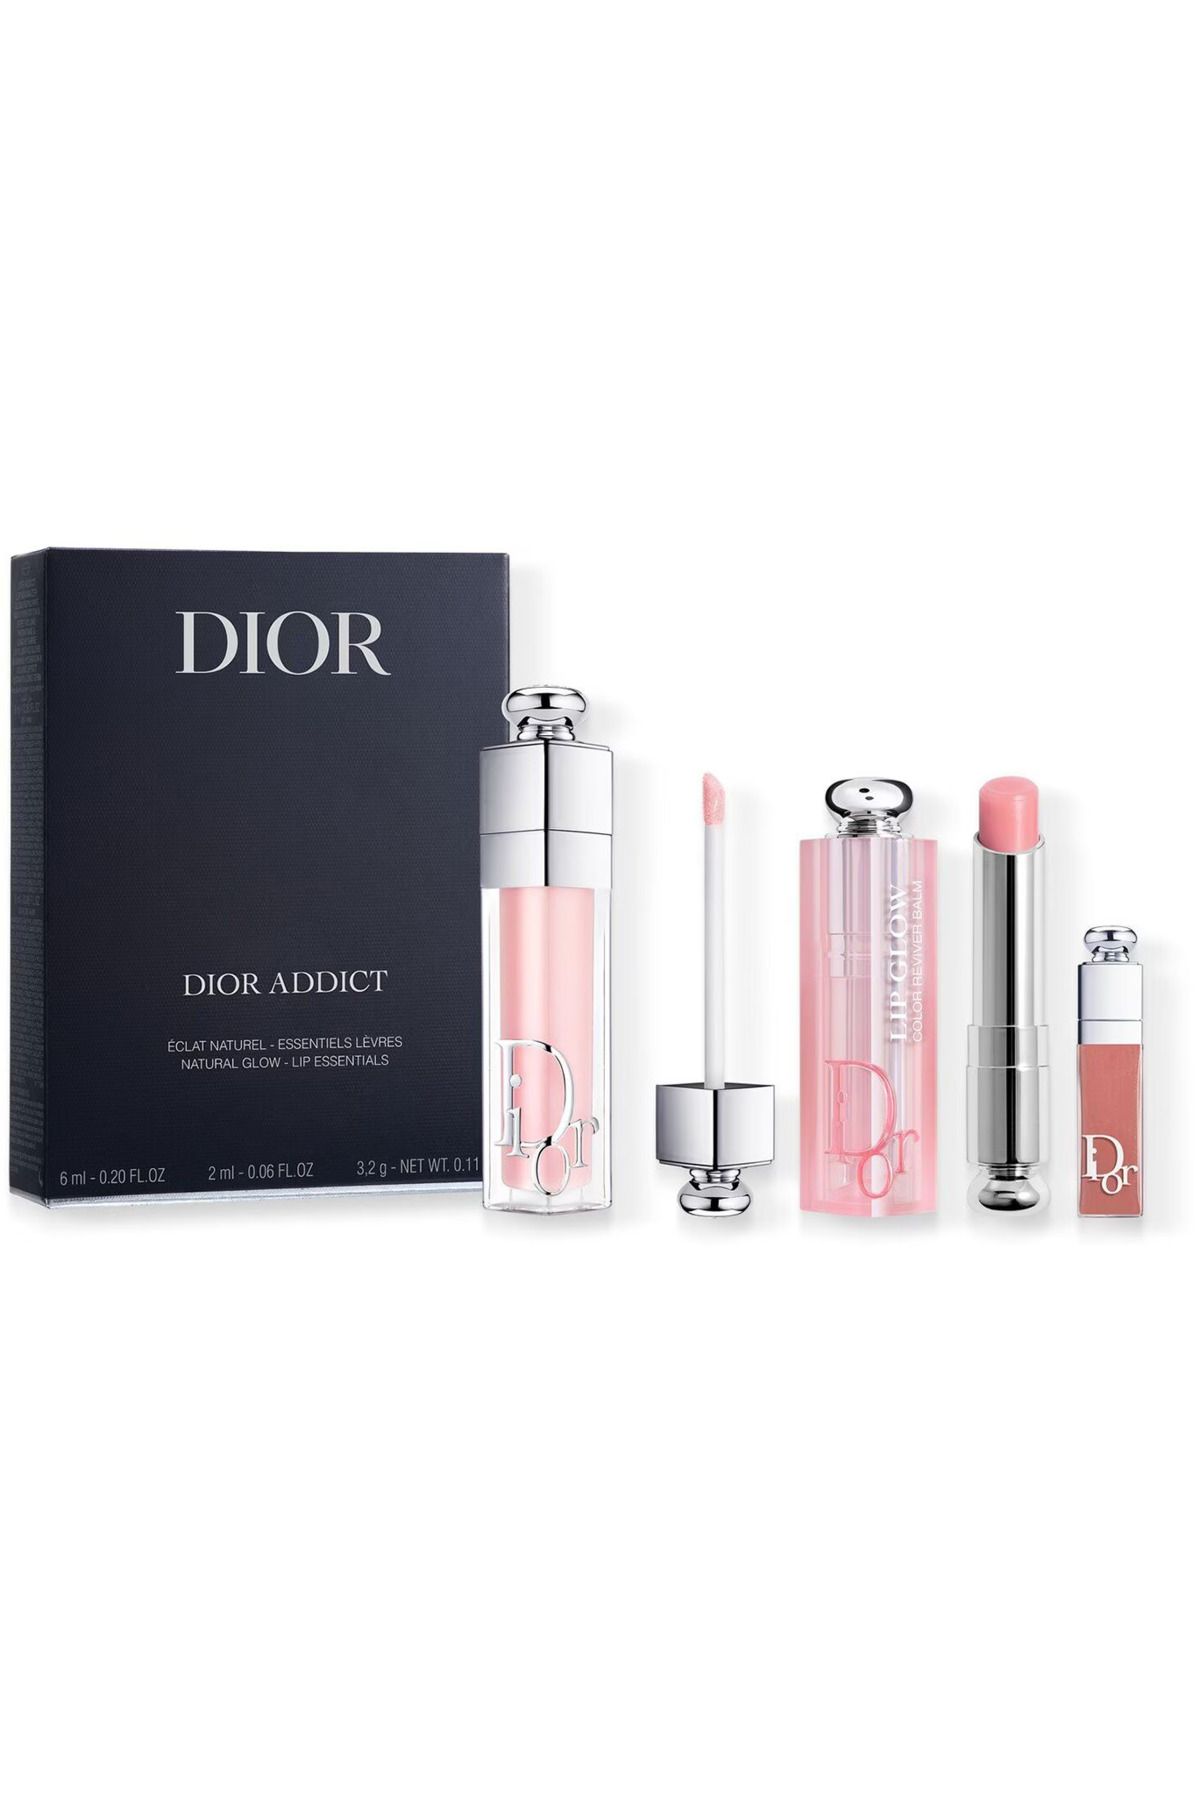 Dior Addict Natural Glow Lip Essentials Makeup Set